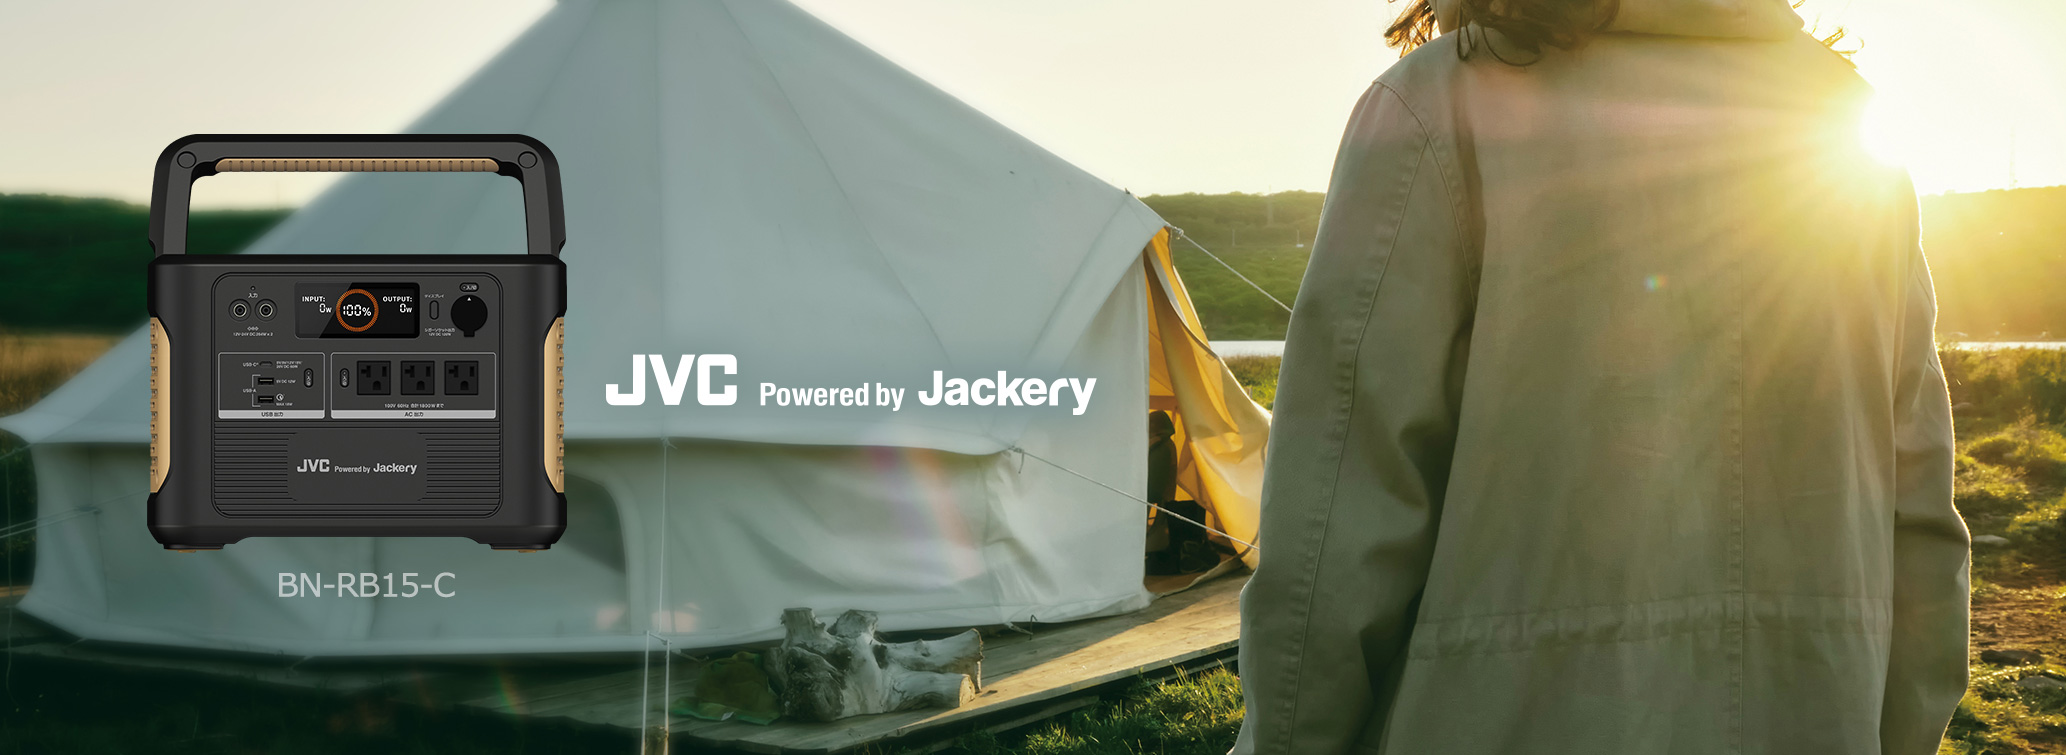 JVCからAC出力1800W、最大容量1534Whを実現したシリーズ最強の